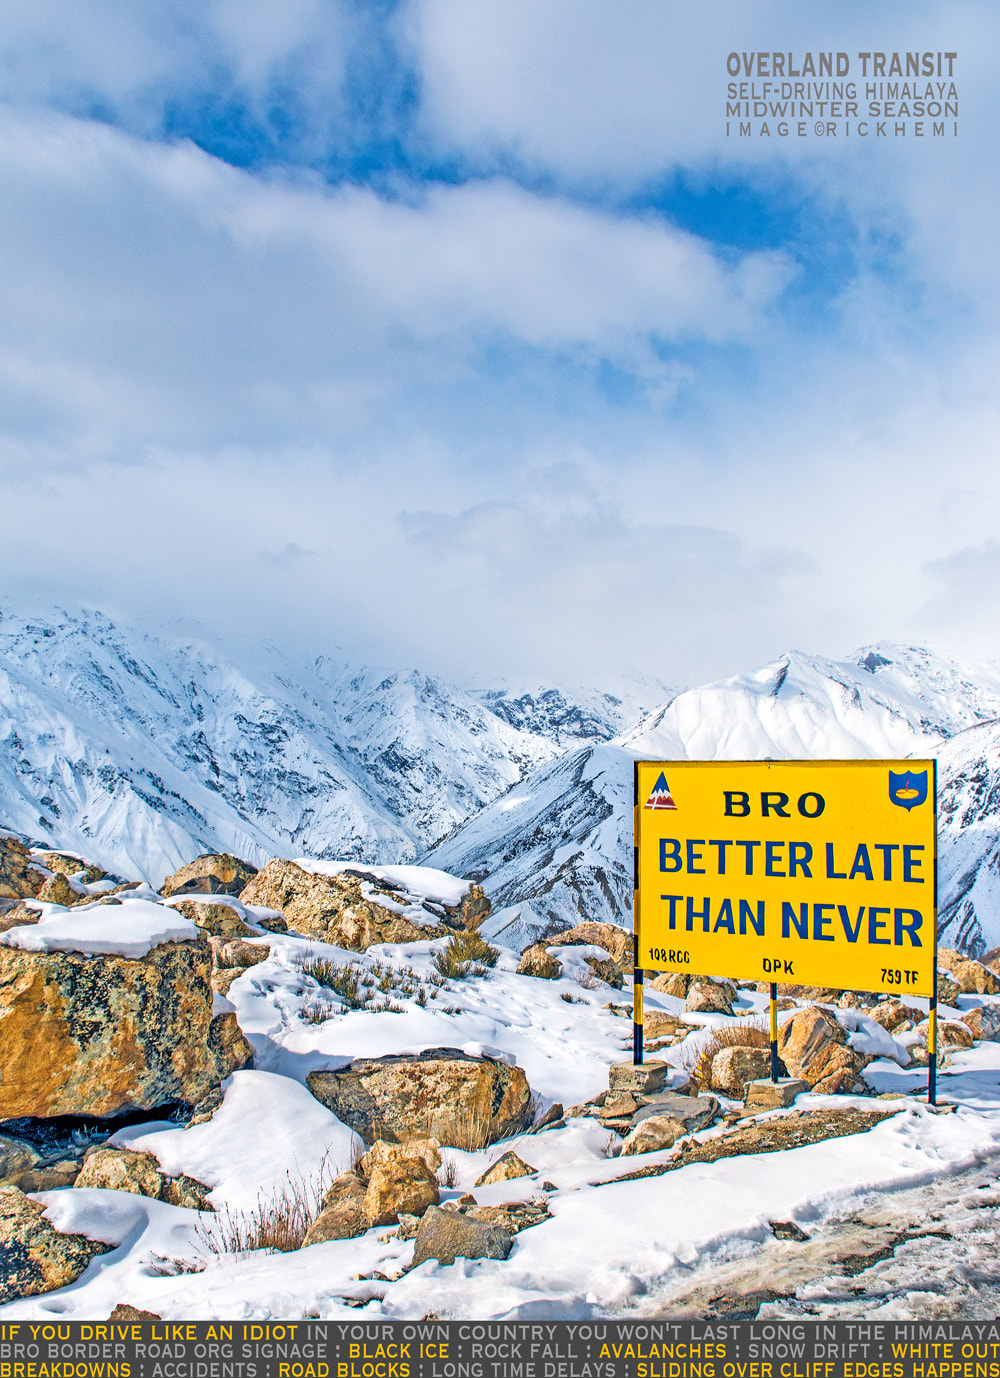 solo overland travel and transit Himalaya midwinter, self-driving midwinter Himalaya, image by Rick Hemi